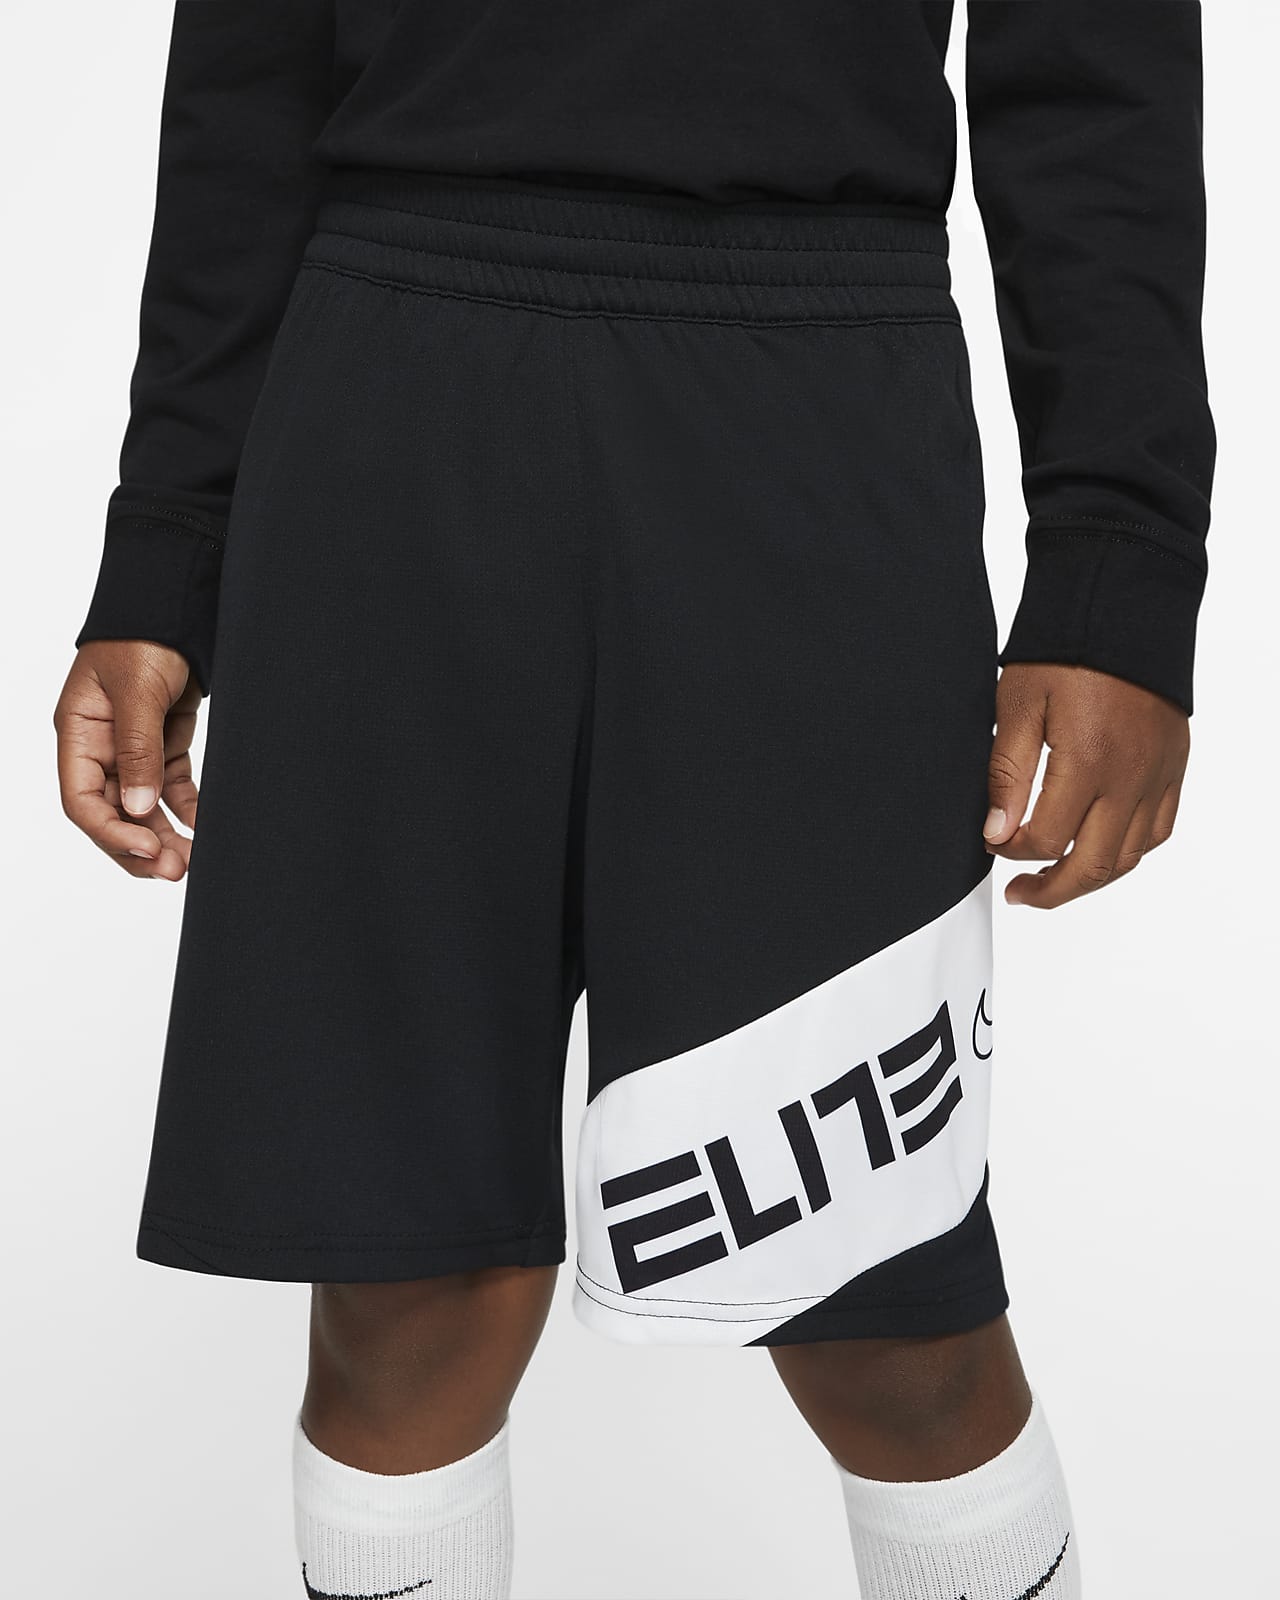 nike elite training shorts